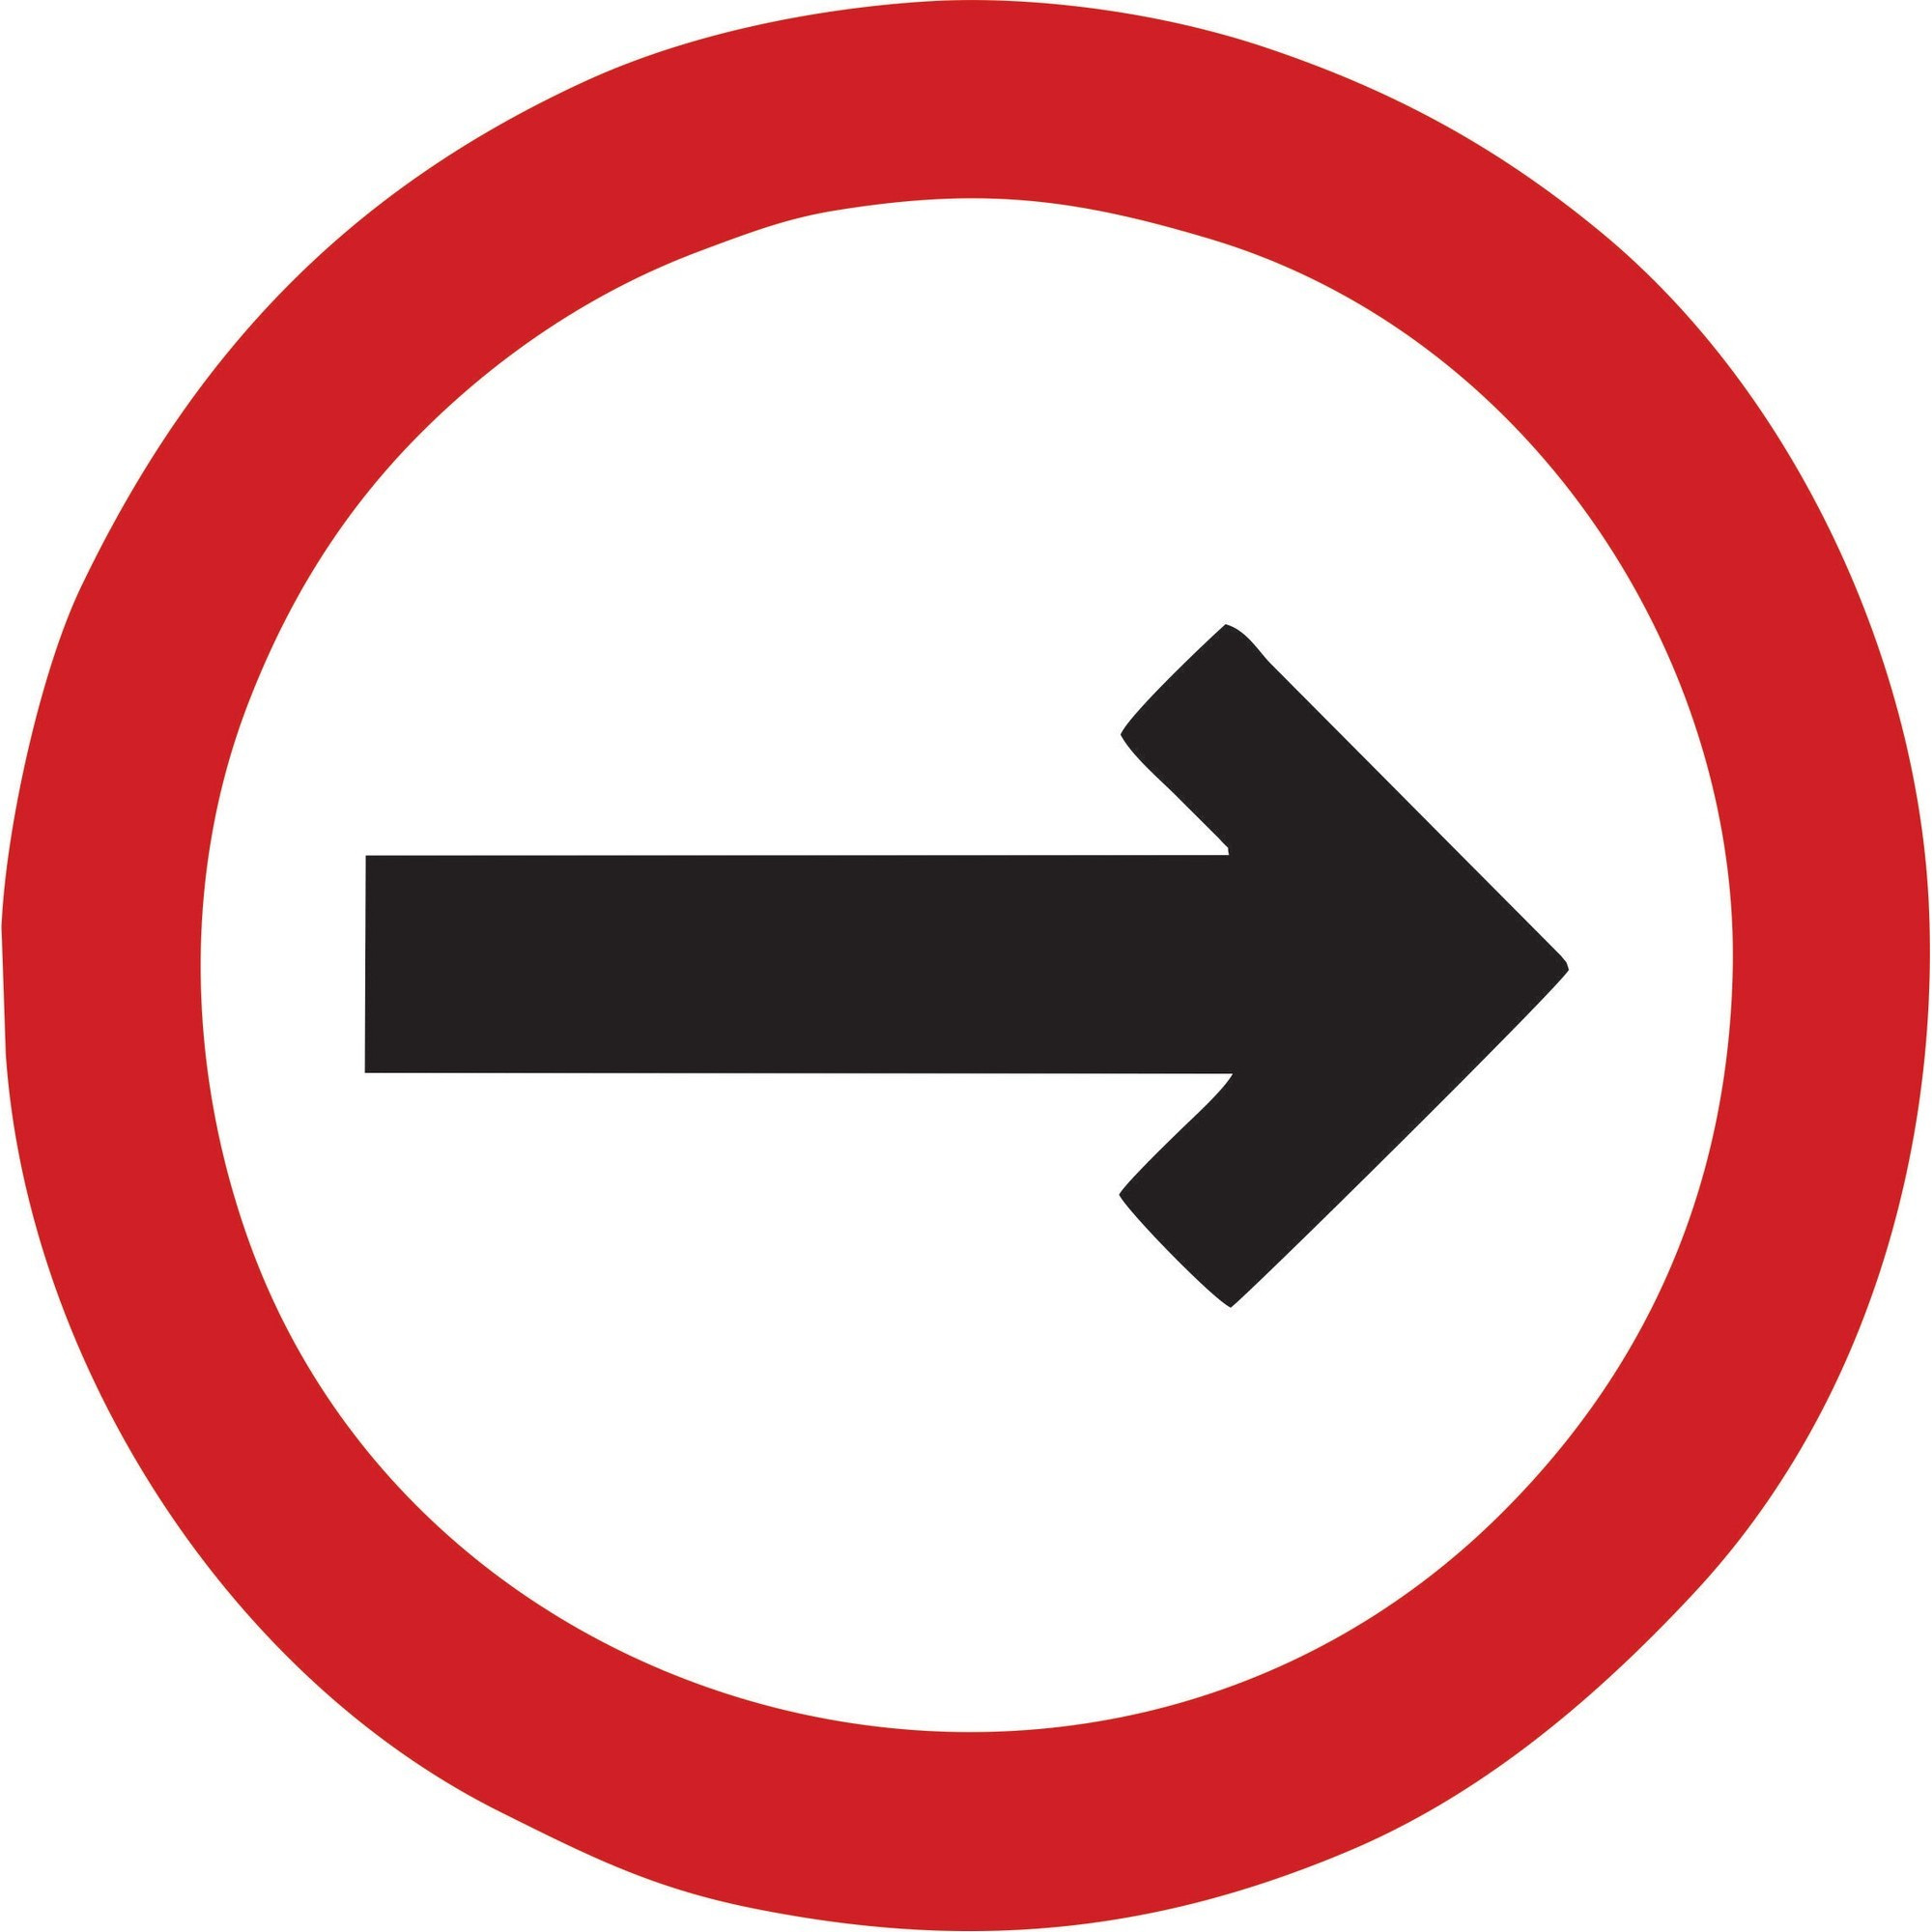 Entendendo as placas de trânsito no Reino Unido